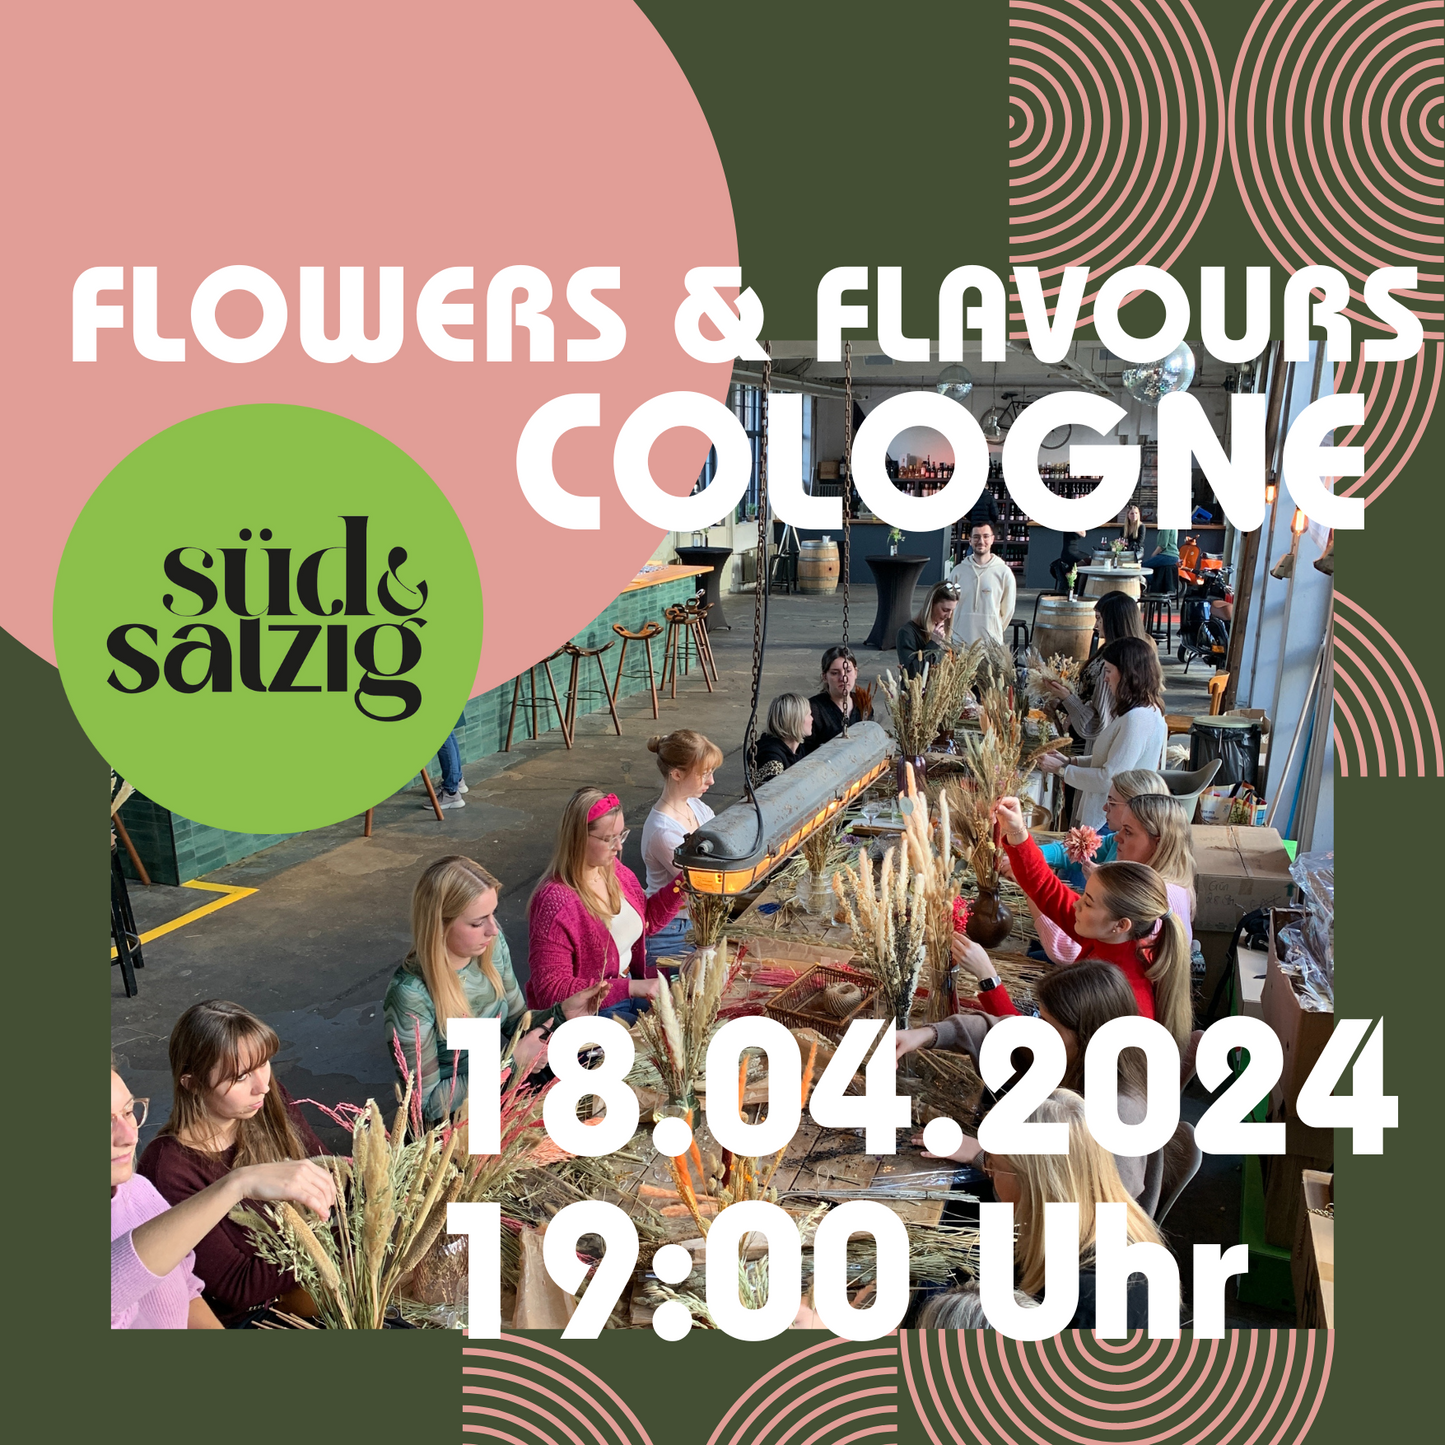 FLOWERS & FLAVOURS - Trockenblumenbouquet Workshop und Drinks Café Süd & Salzig Köln 18.04.2024 19 Uhr